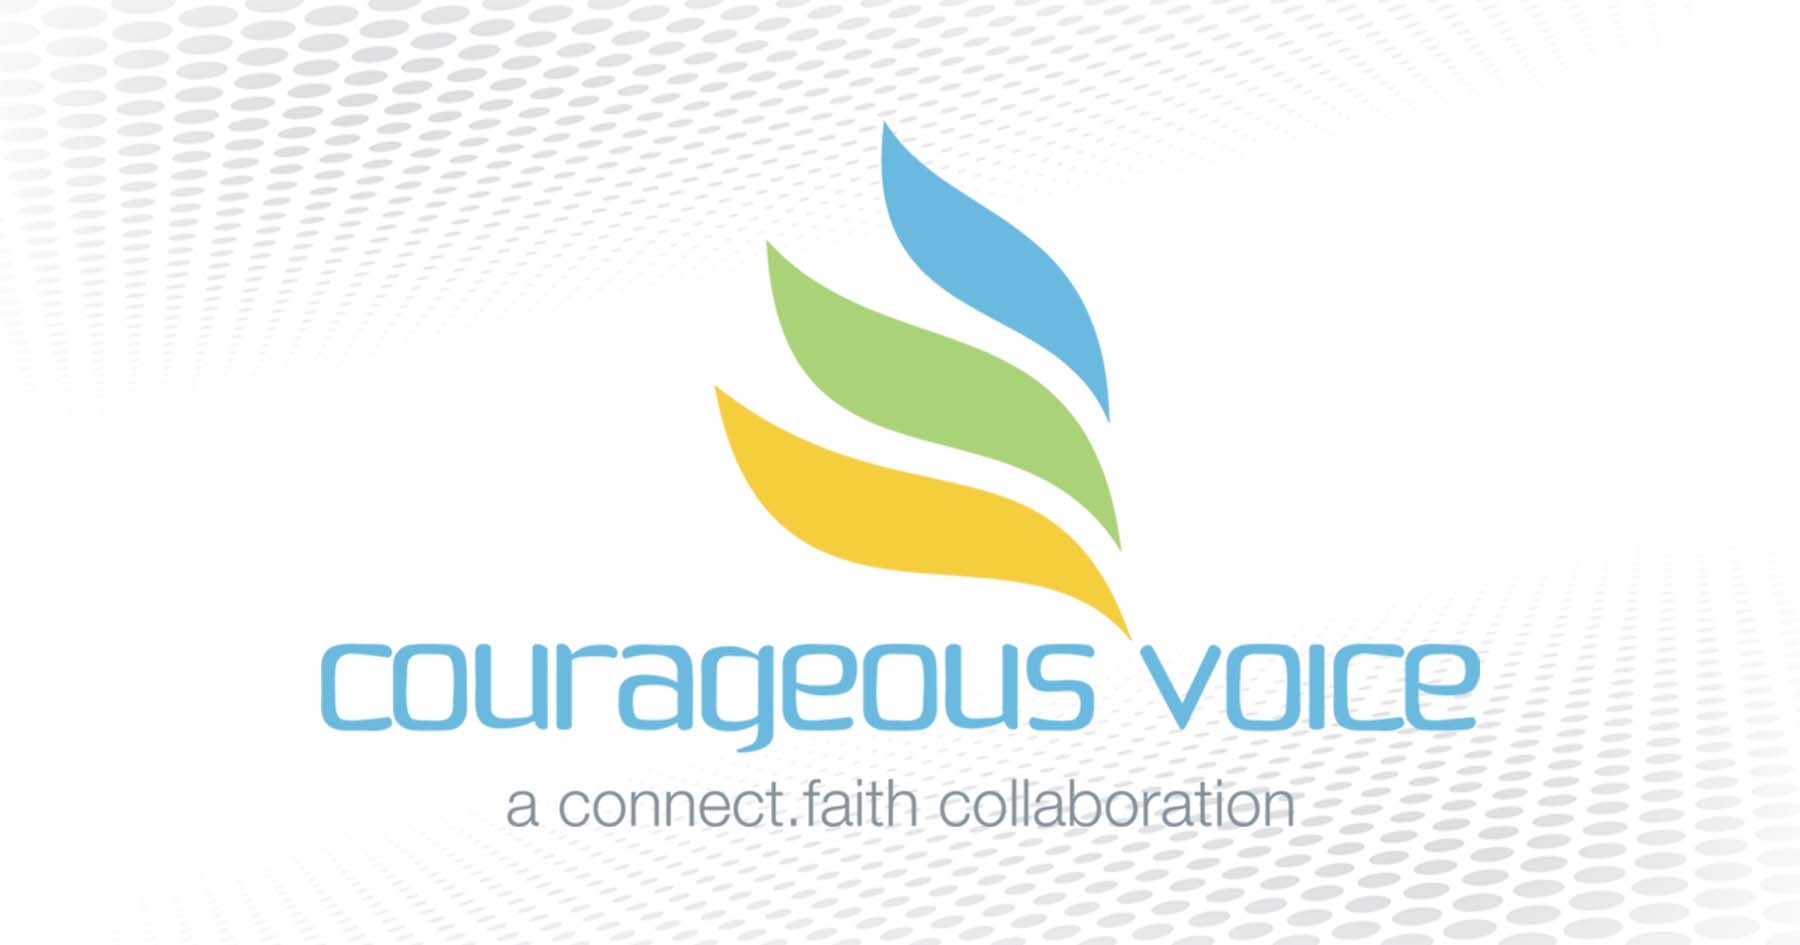 Closing Season 1 | “Courageous Voice” | connect.faith